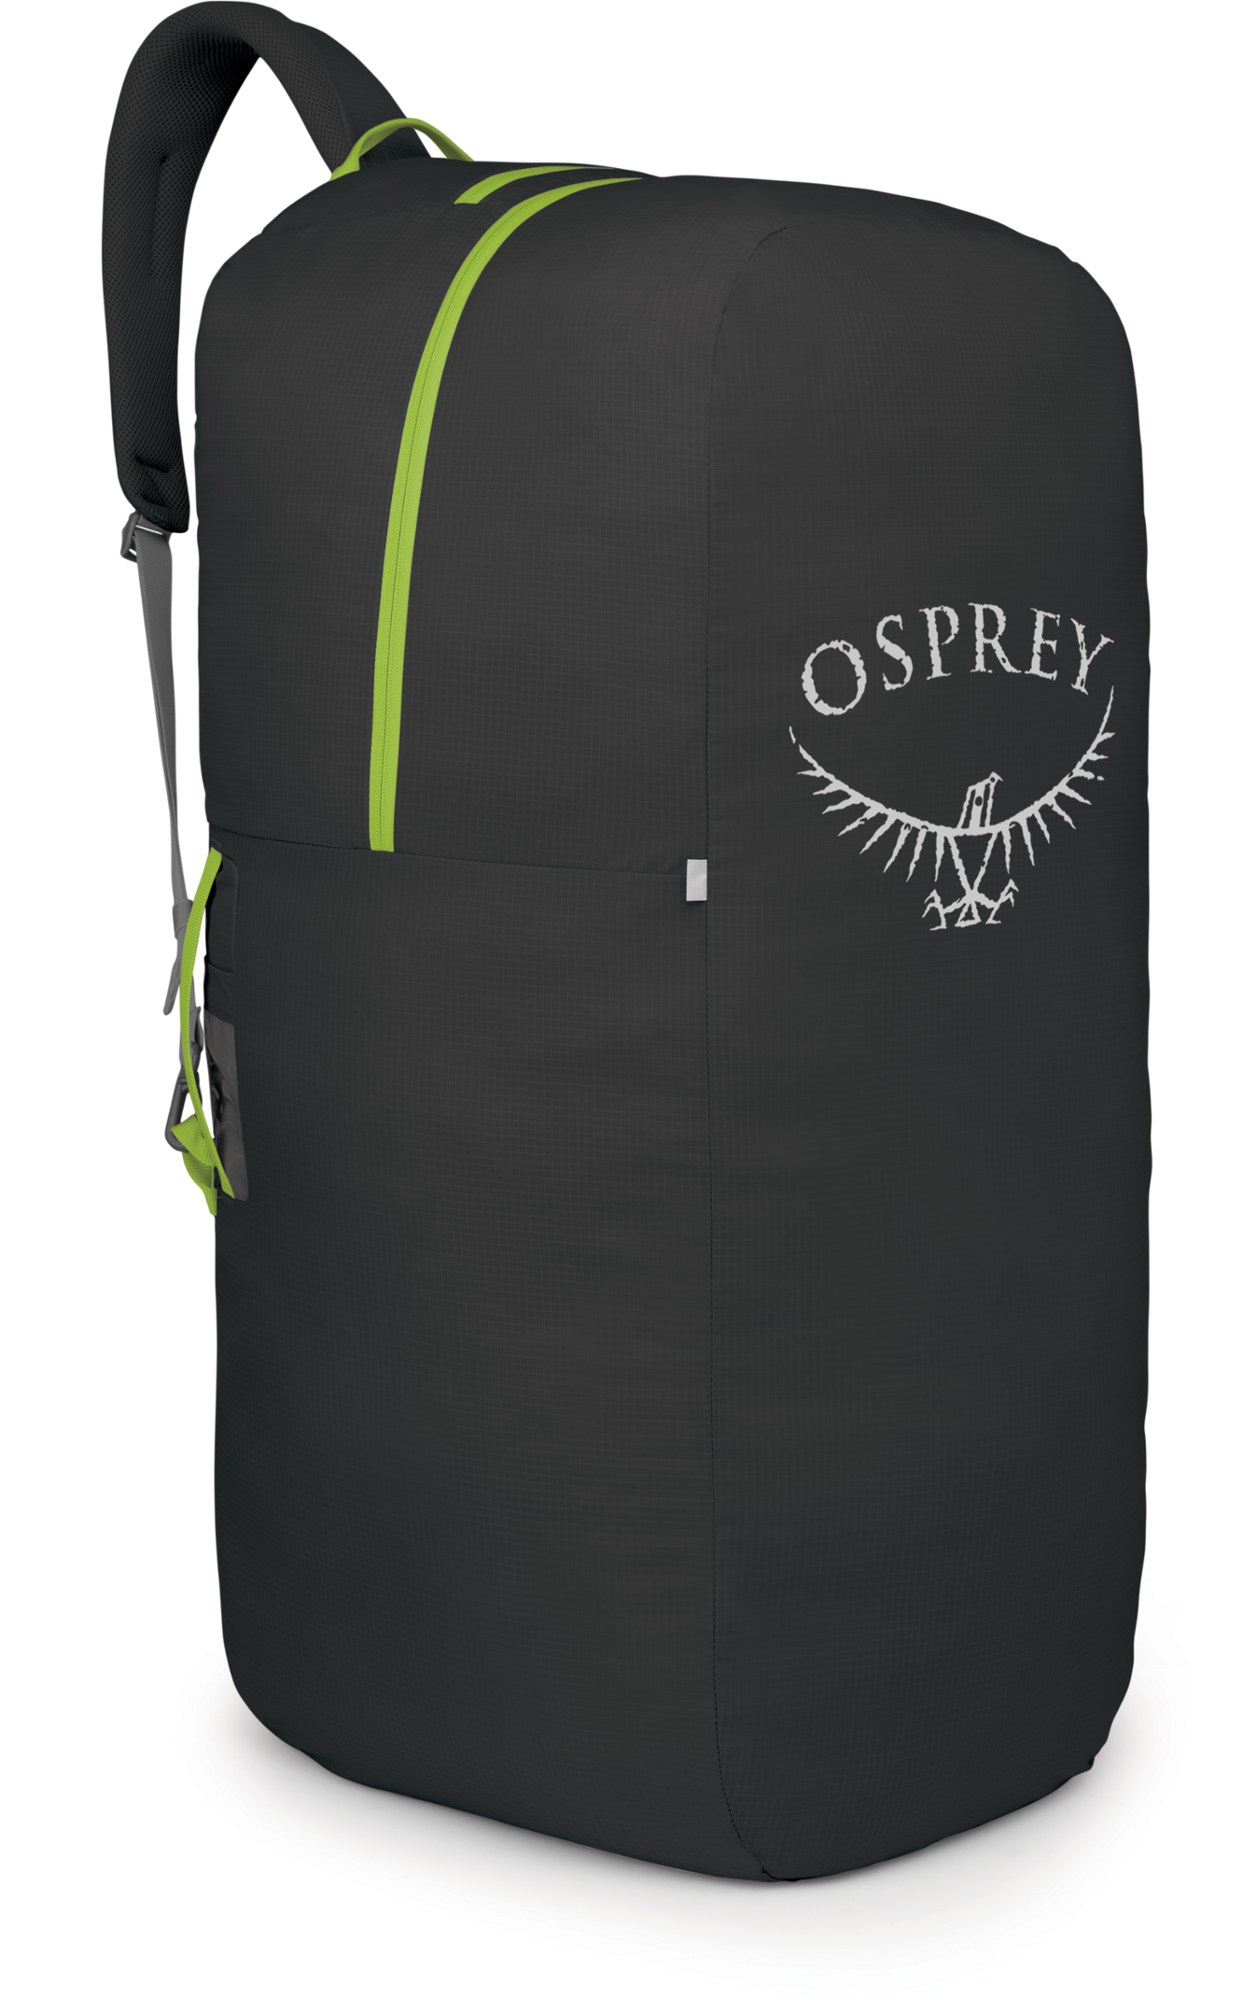 Сумка-рюкзак AirPorter LZ — средний размер Osprey, черный вместительный дорожный рюкзак уличная спортивная сумка легкий рюкзак из ткани оксфорд для походов скалолазания кемпинга водоотталкива